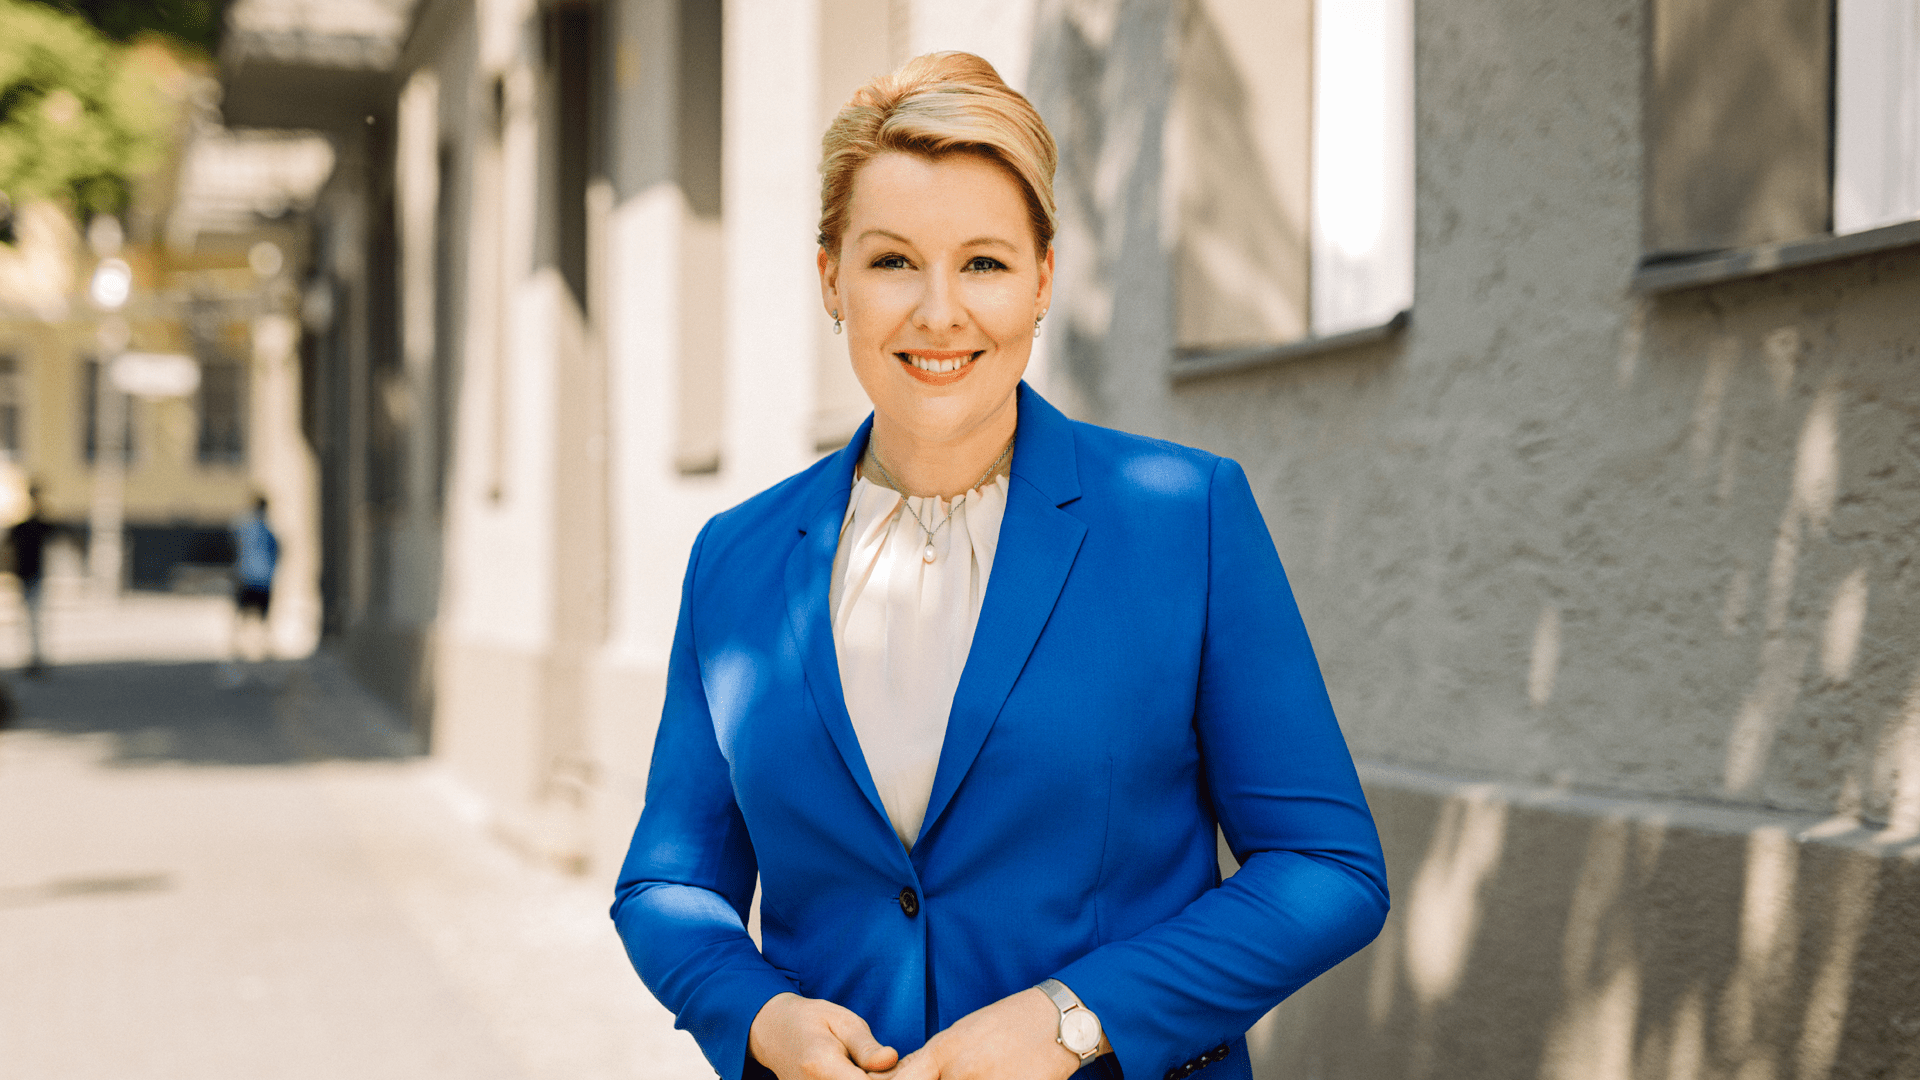 Franziska Giffey Lebenslauf Regierende Bürgermeisterin